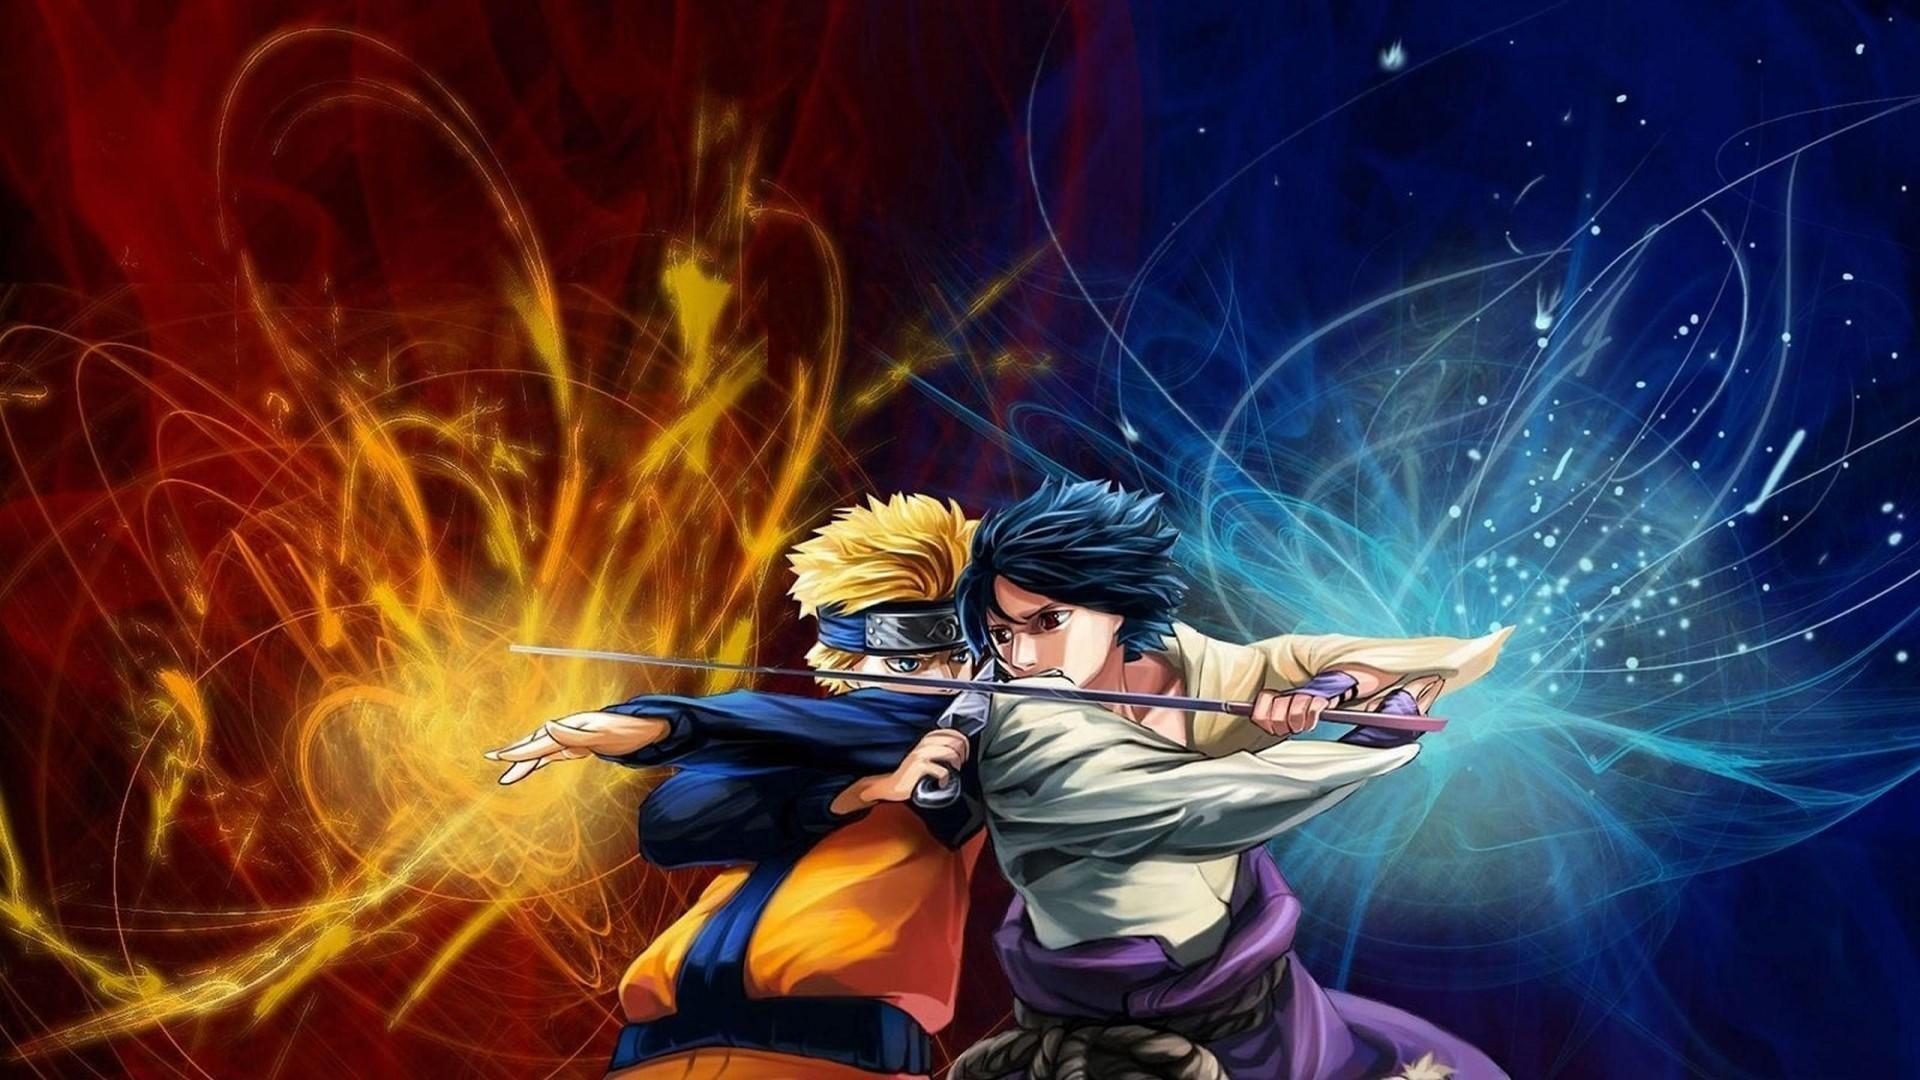 Naruto Vs Sasuke Naruto Anime Wallpaper. Hdwidescreens